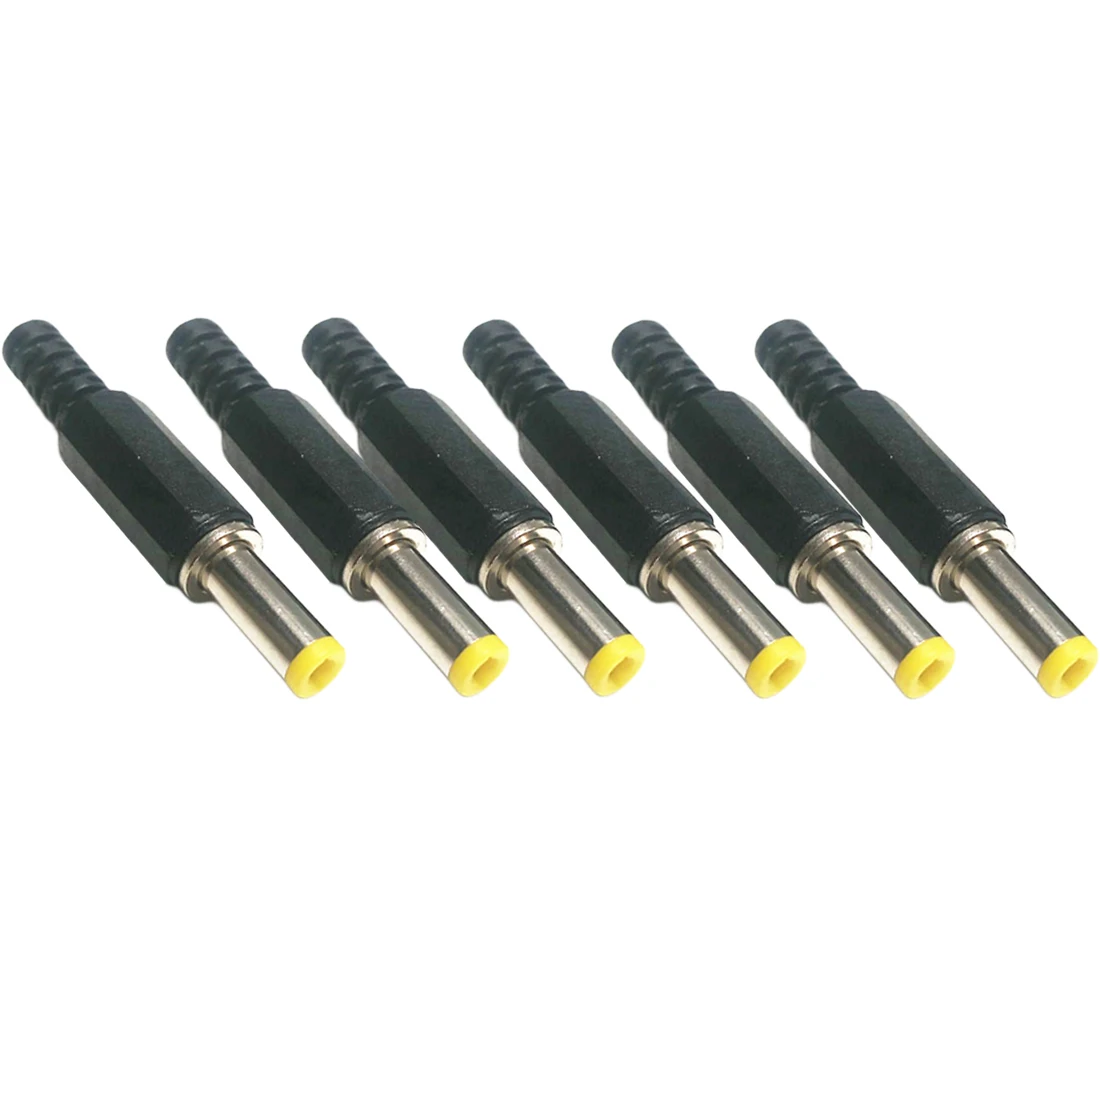 6 шт Горячие 5,5 мм x 2,5 мм DC штекеры питания мужские коннекторы для бочки черный и желтый